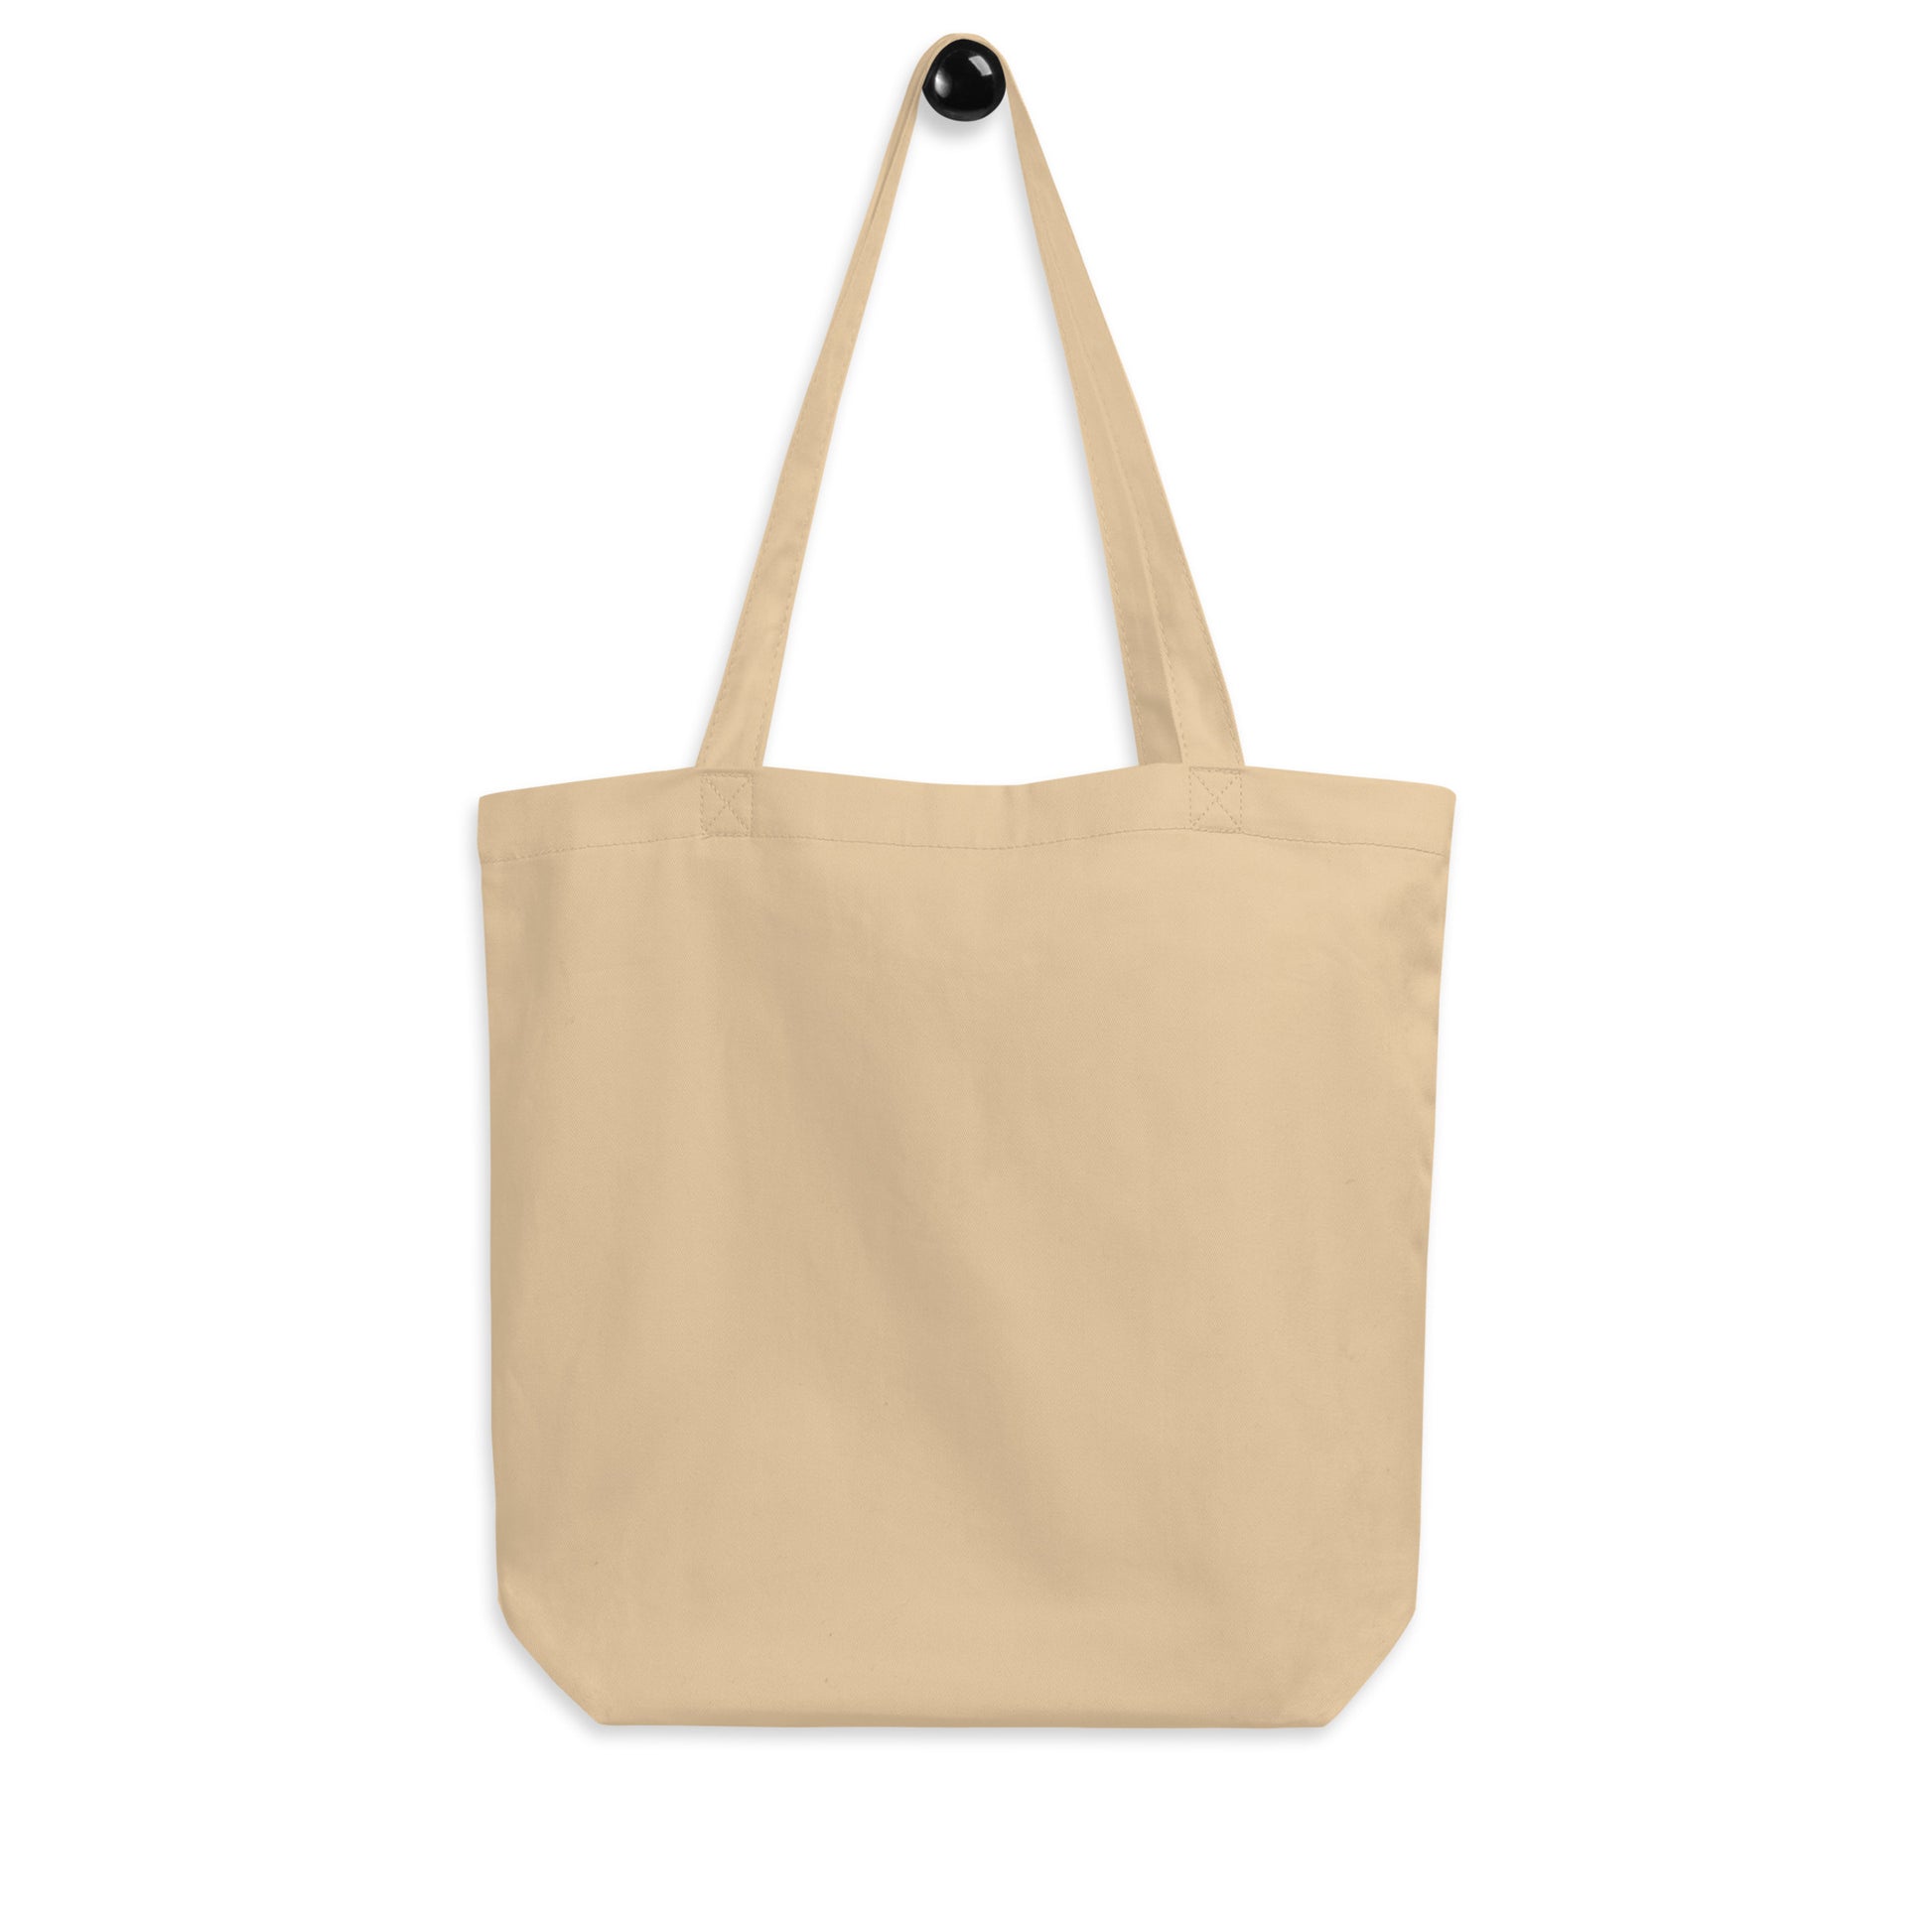 Cool Travel Gift Organic Tote Bag - Viking Blue • TPA Tampa • YHM Designs - Image 05